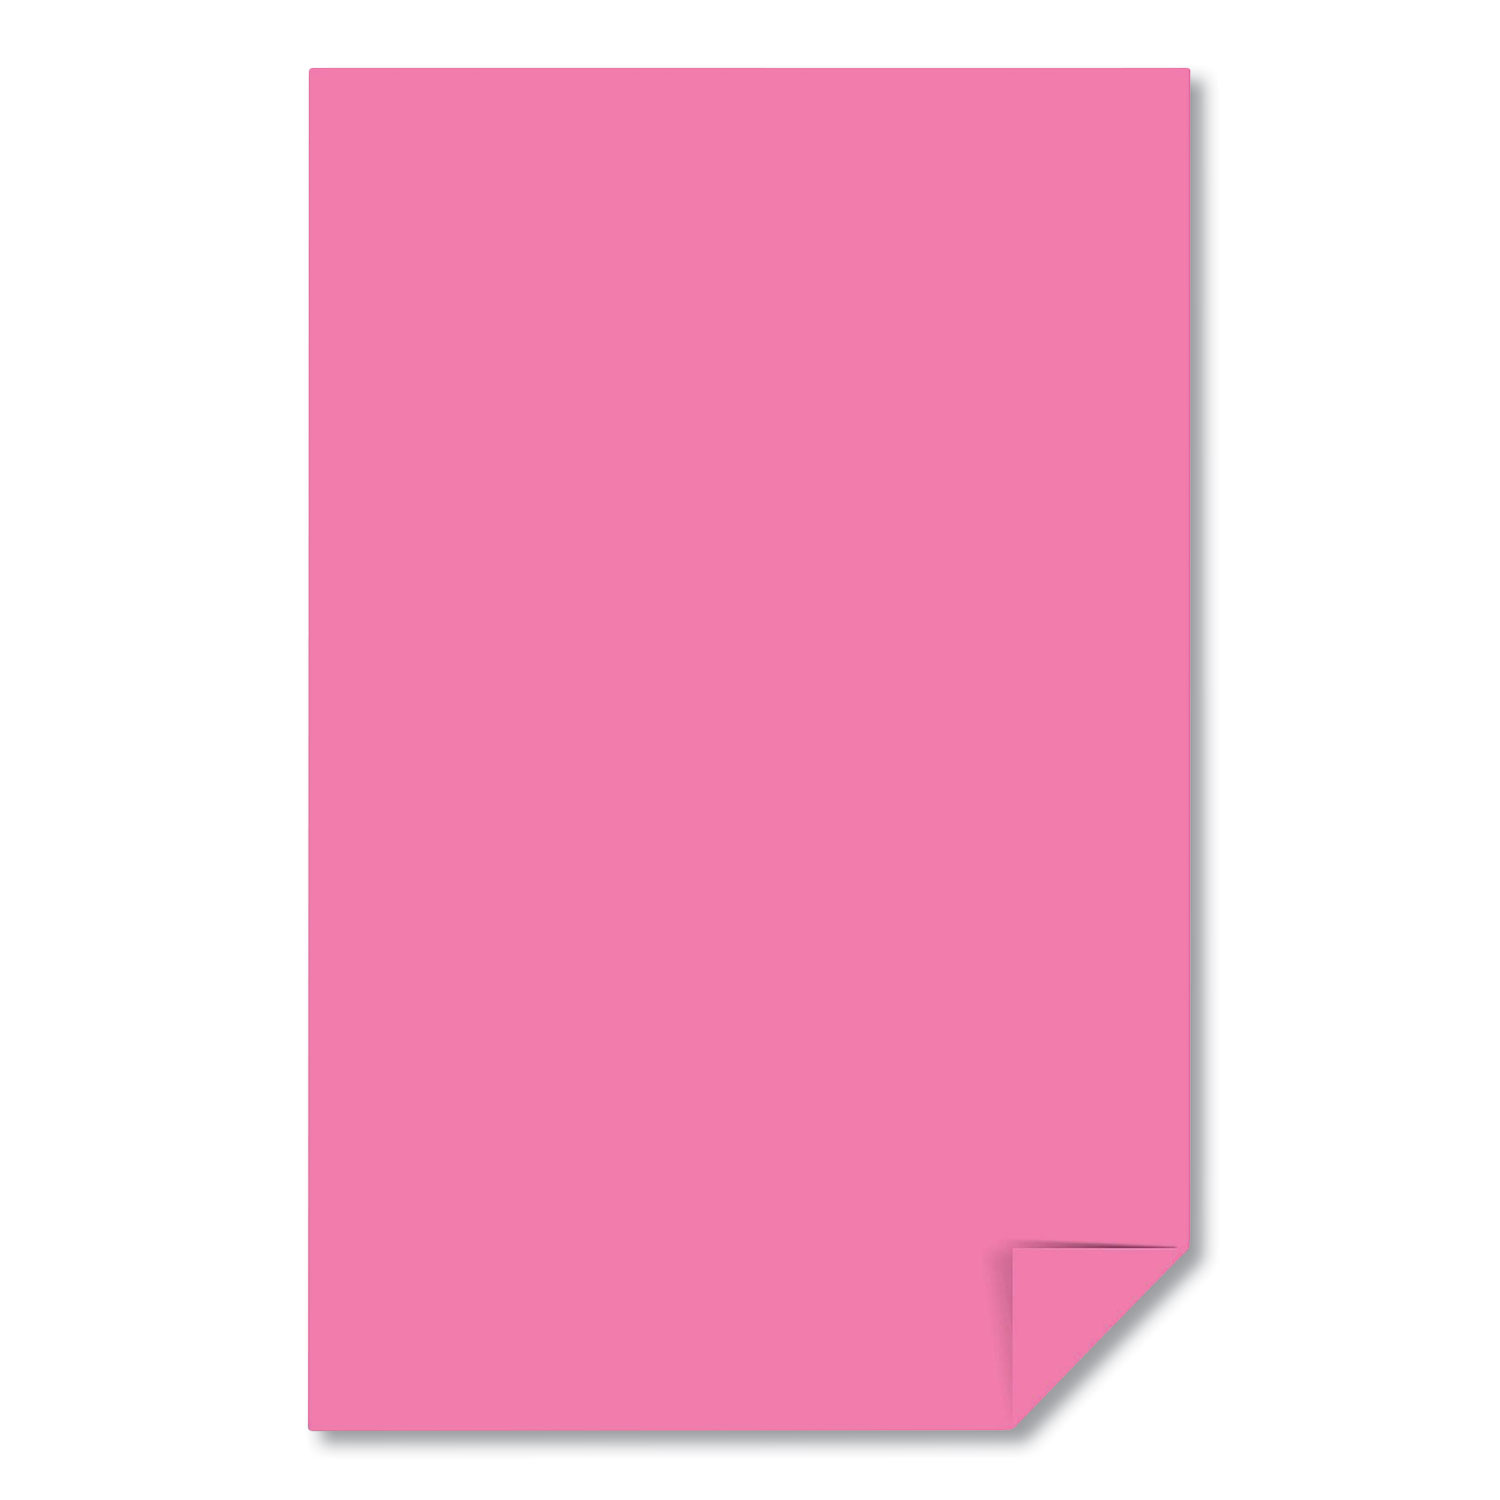 Astrobrights® Color Paper, 24 lb, 11 x 17, Pulsar Pink, 500/Ream